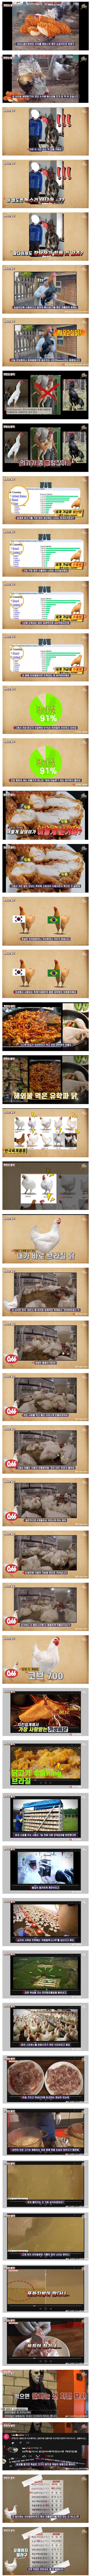 순살치킨으로 많이 쓰이는 브라질산 닭의 진실